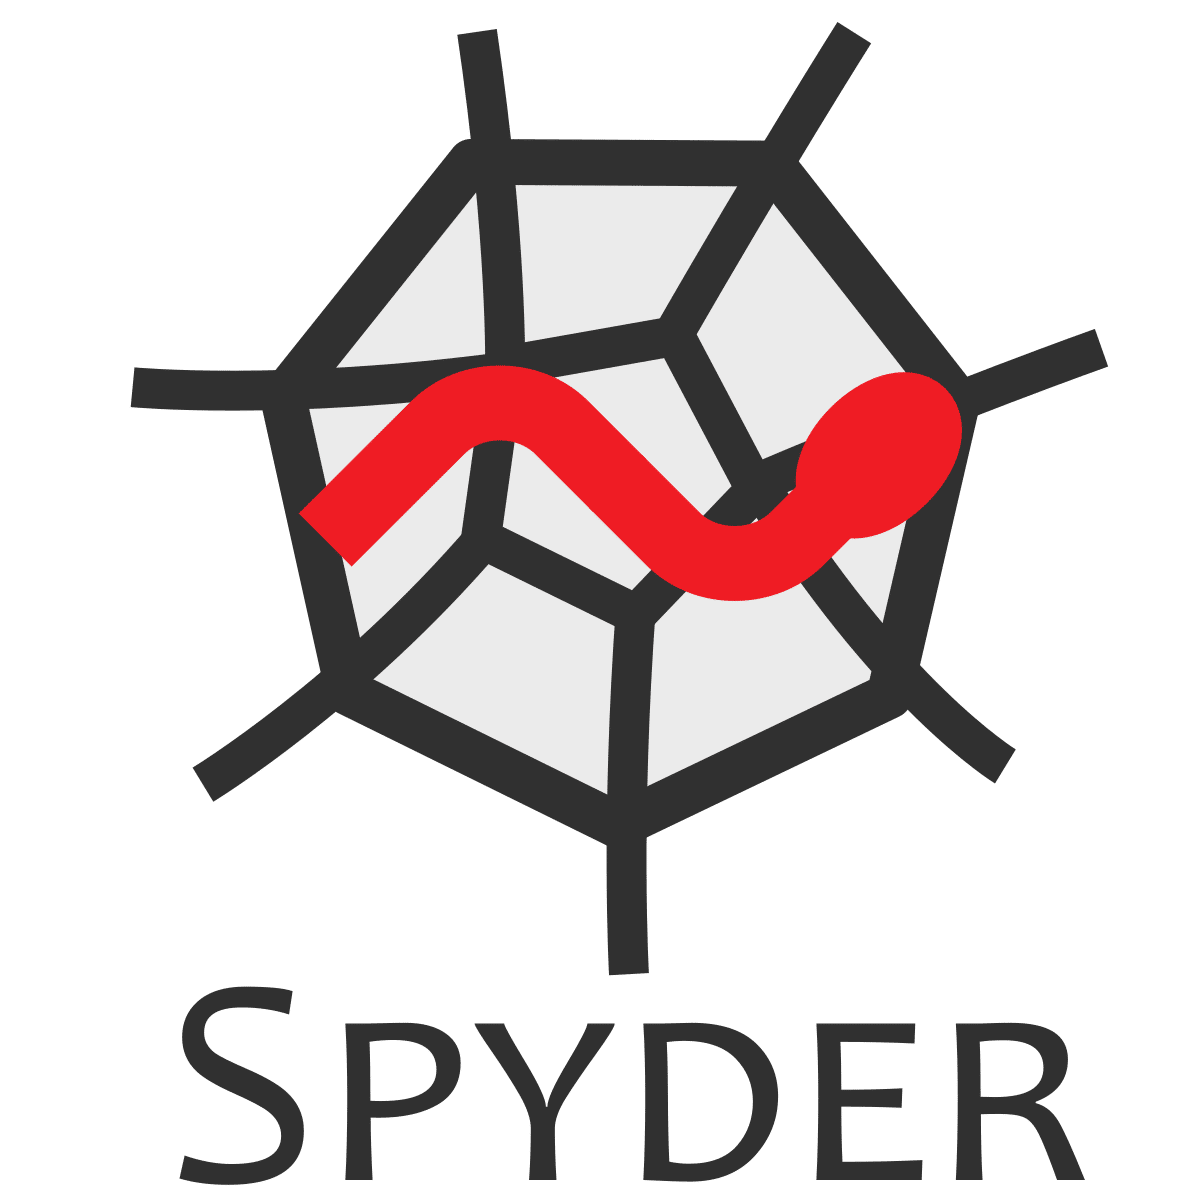 วิธีอัปเดต Anaconda เวอร์ชันใหม่ Spyder 5.0.0 และ Jupyter